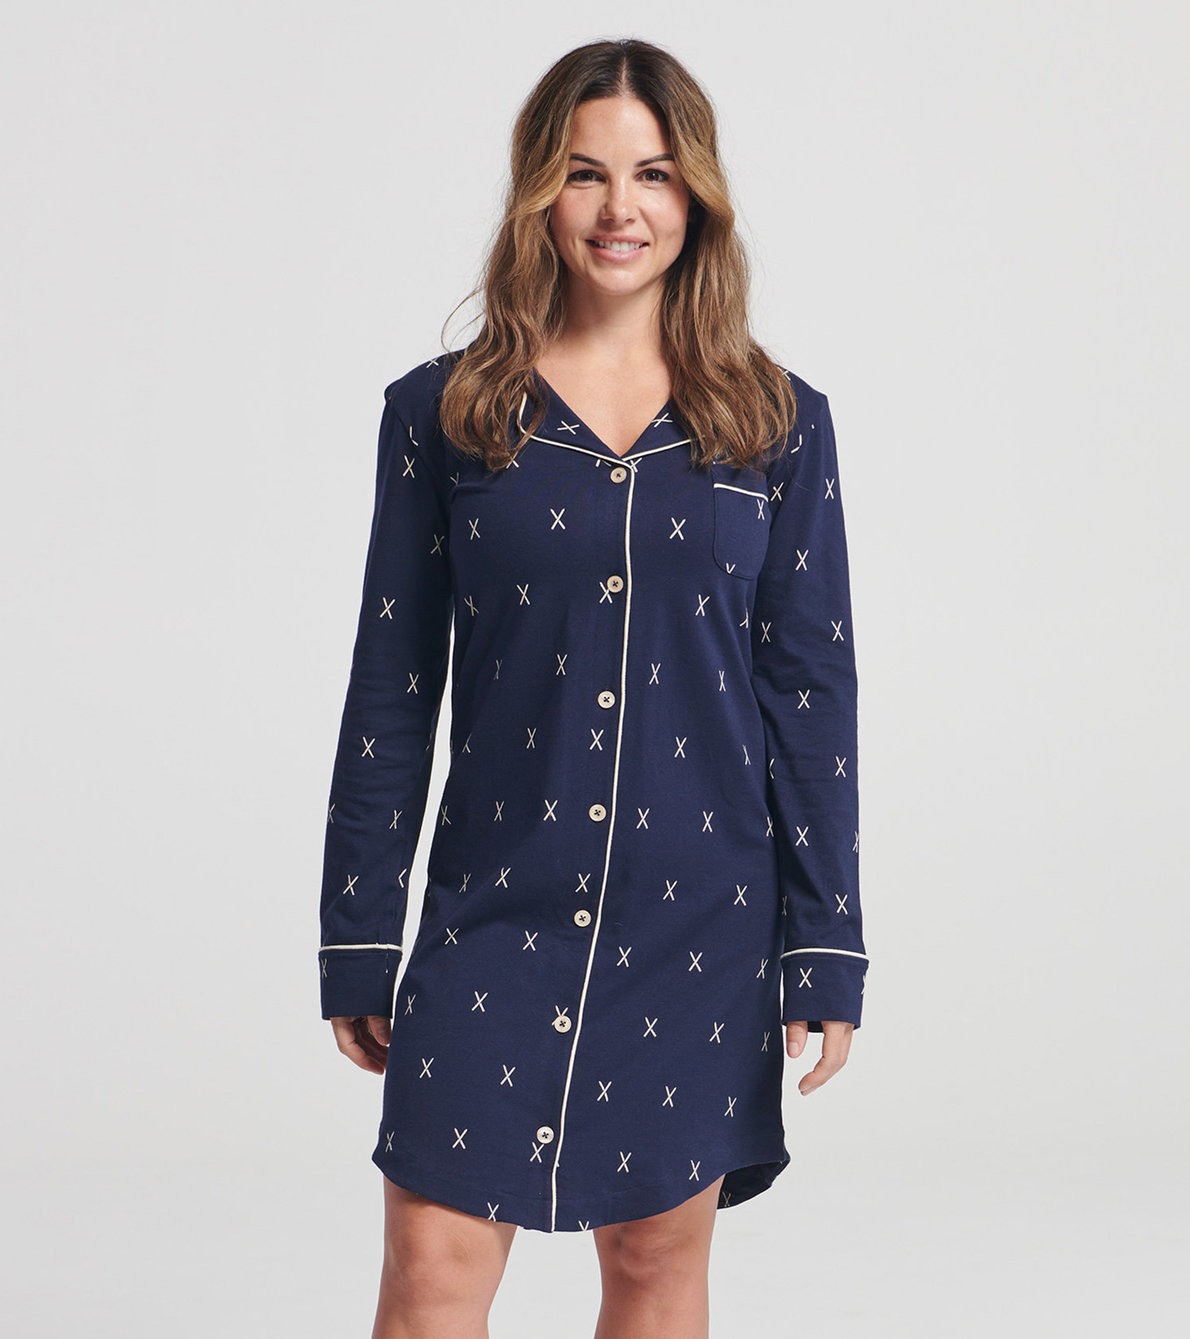 Agrandir l'image de Robe de nuit en jersey extensible pour femme – Skis sur bleu marine